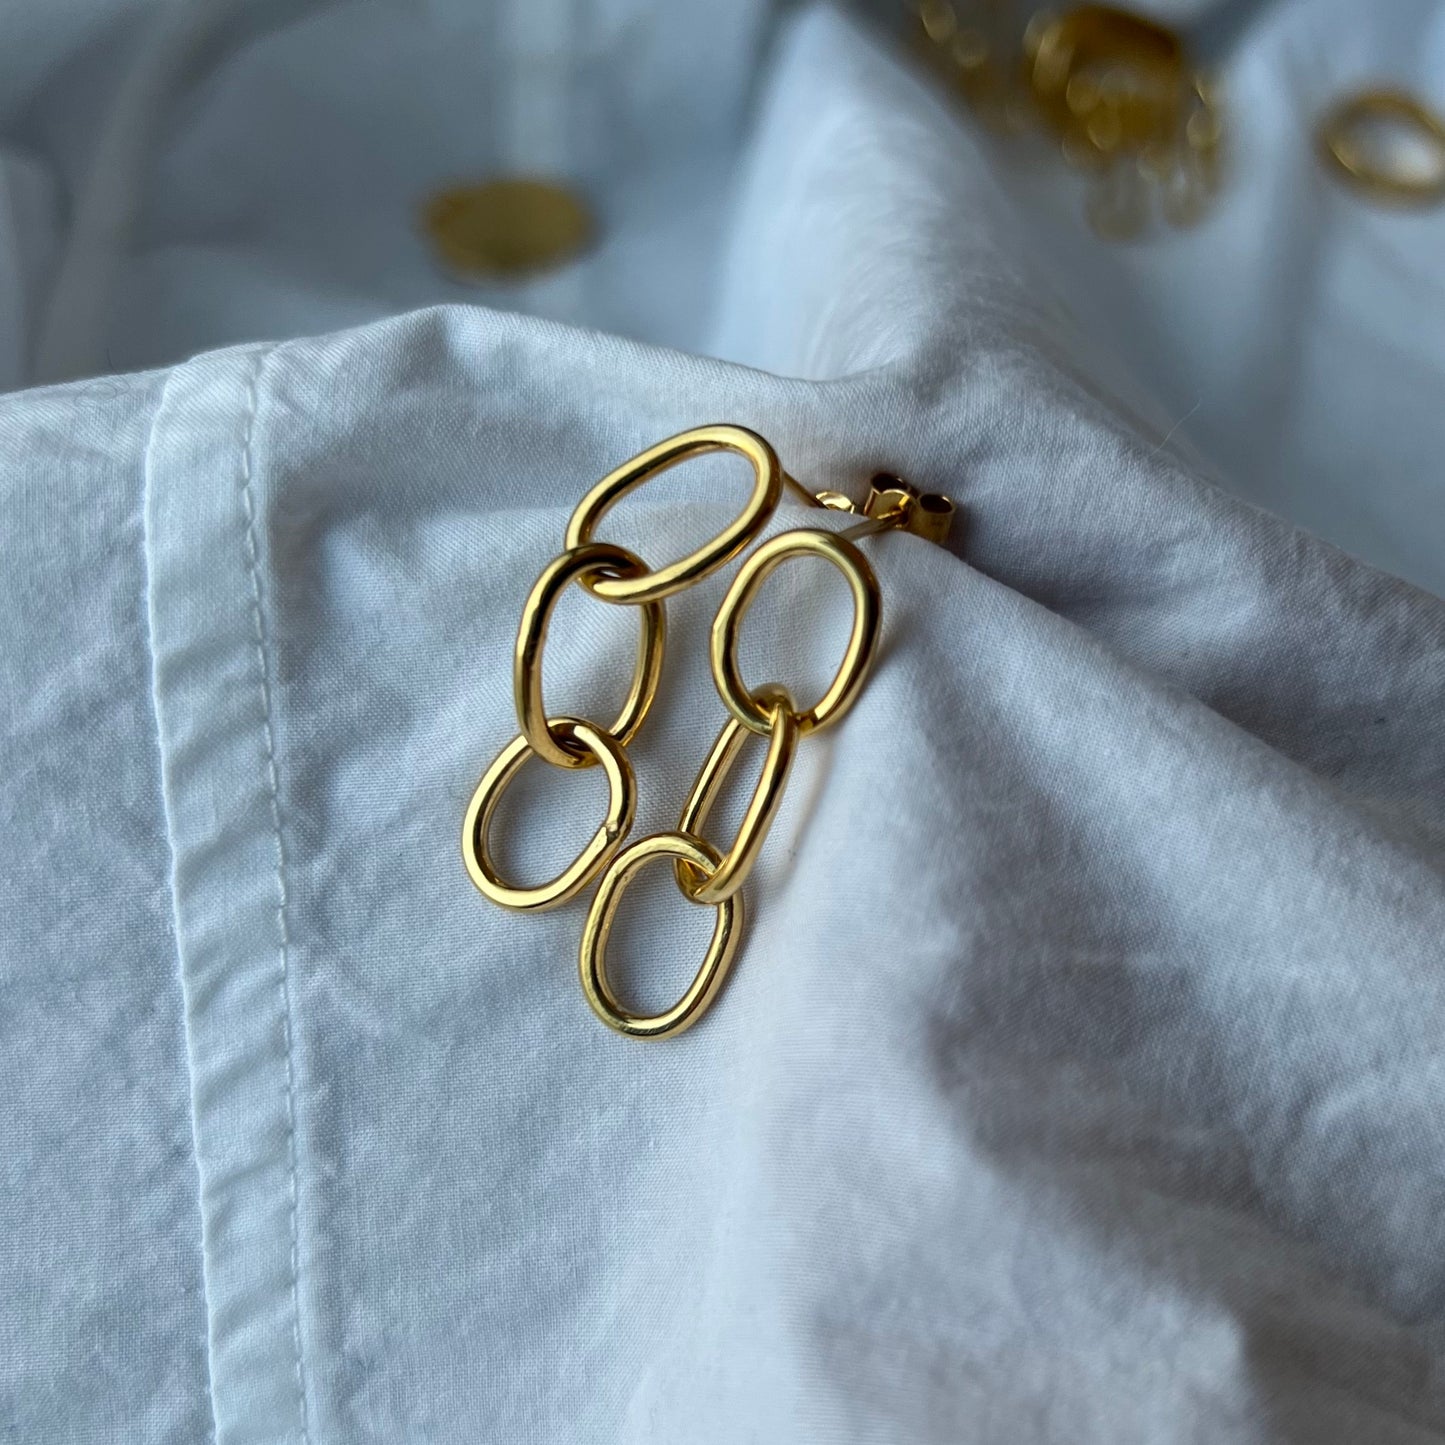 Gold vermeil oval pastille triple-chain link earrings.